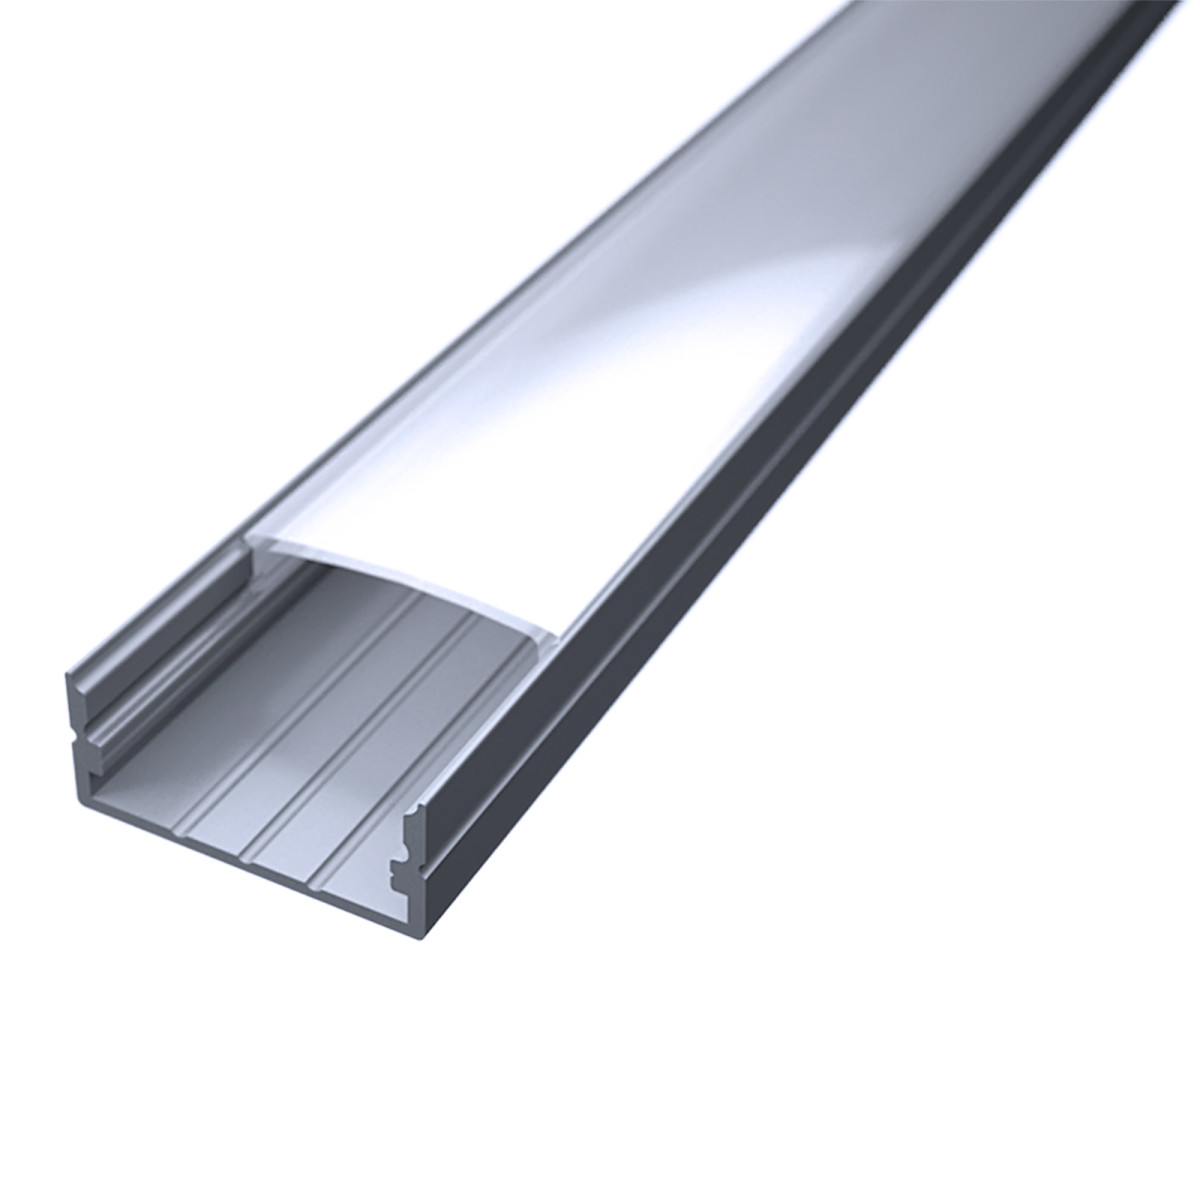 LED Flachprofil "Slim-Line max" | Abdeckung diffus | Zuschnitt auf 83cm |